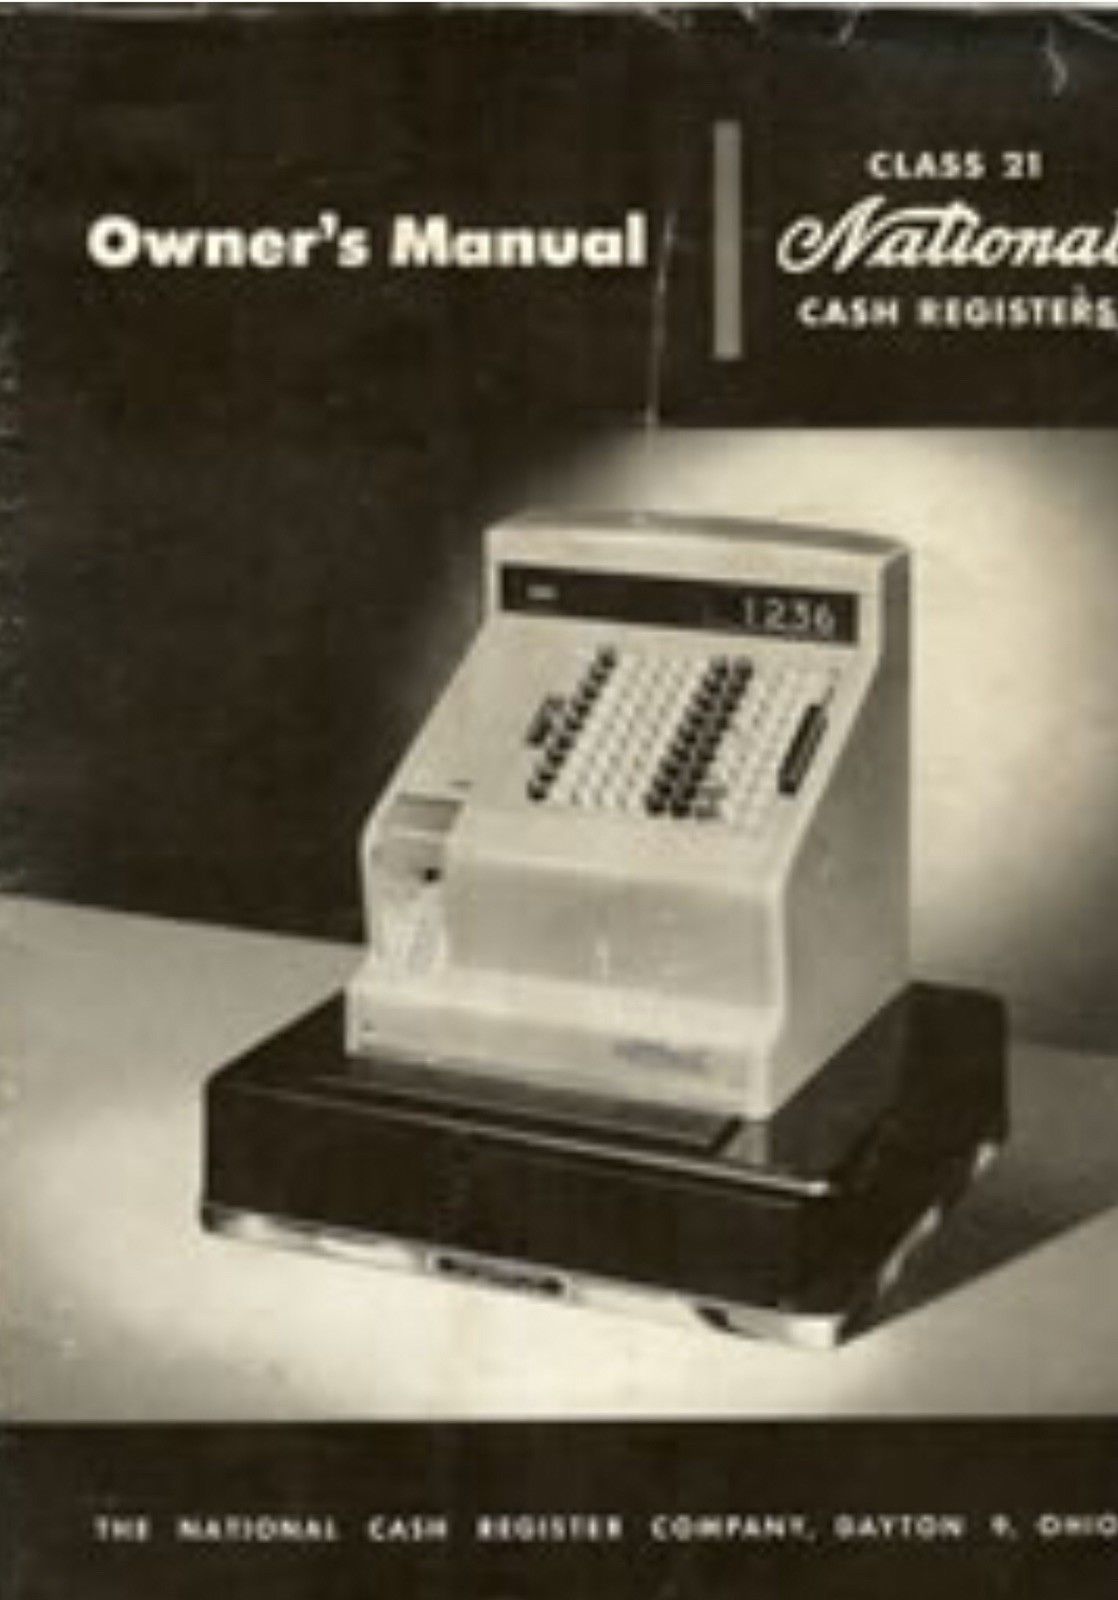 cash register parts